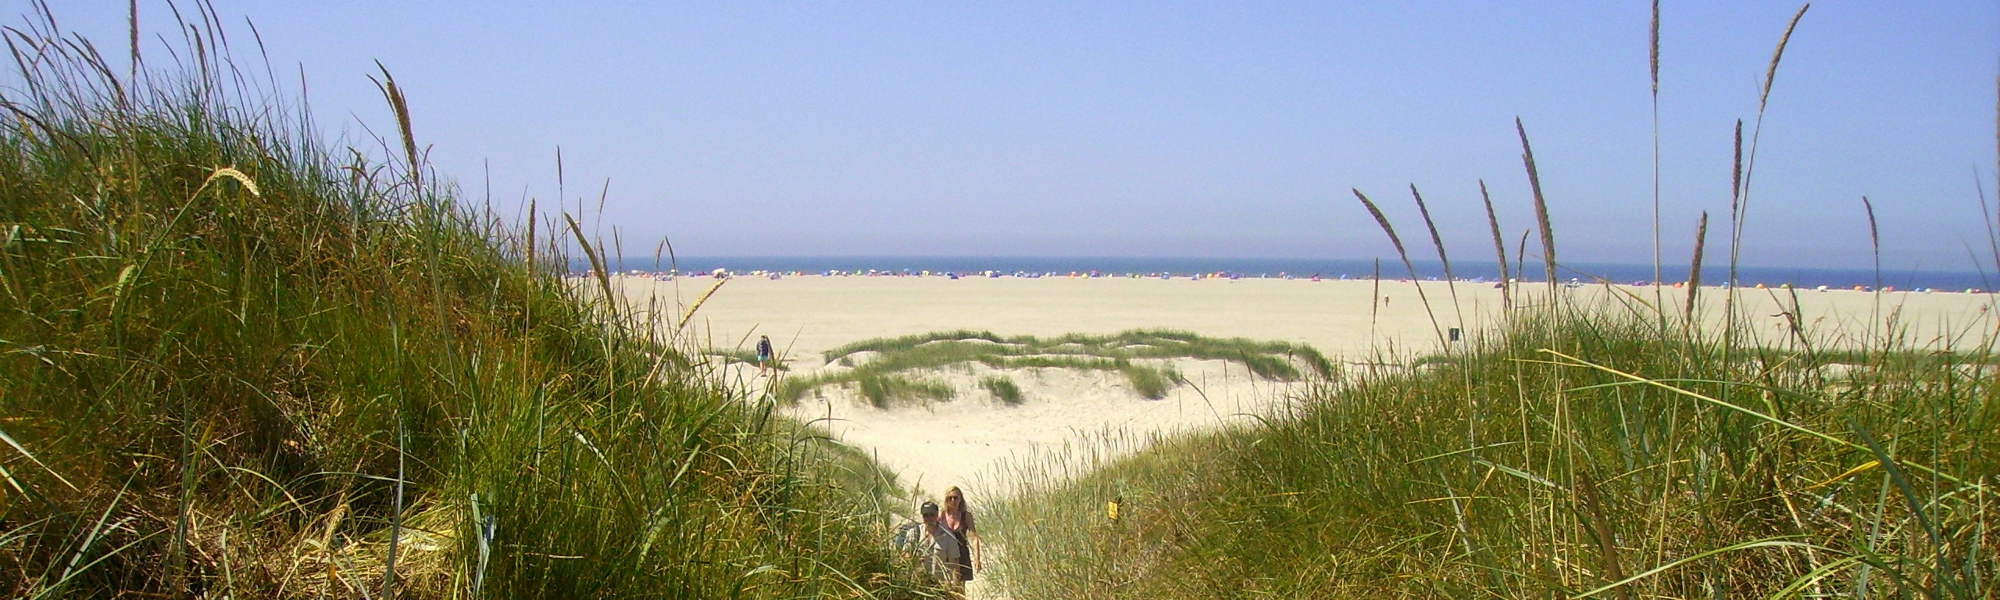 Camping Silbermöwe: Aussenfoto Strandblick zwischen Dünen hindurch über den Strand bis zur Nordsee